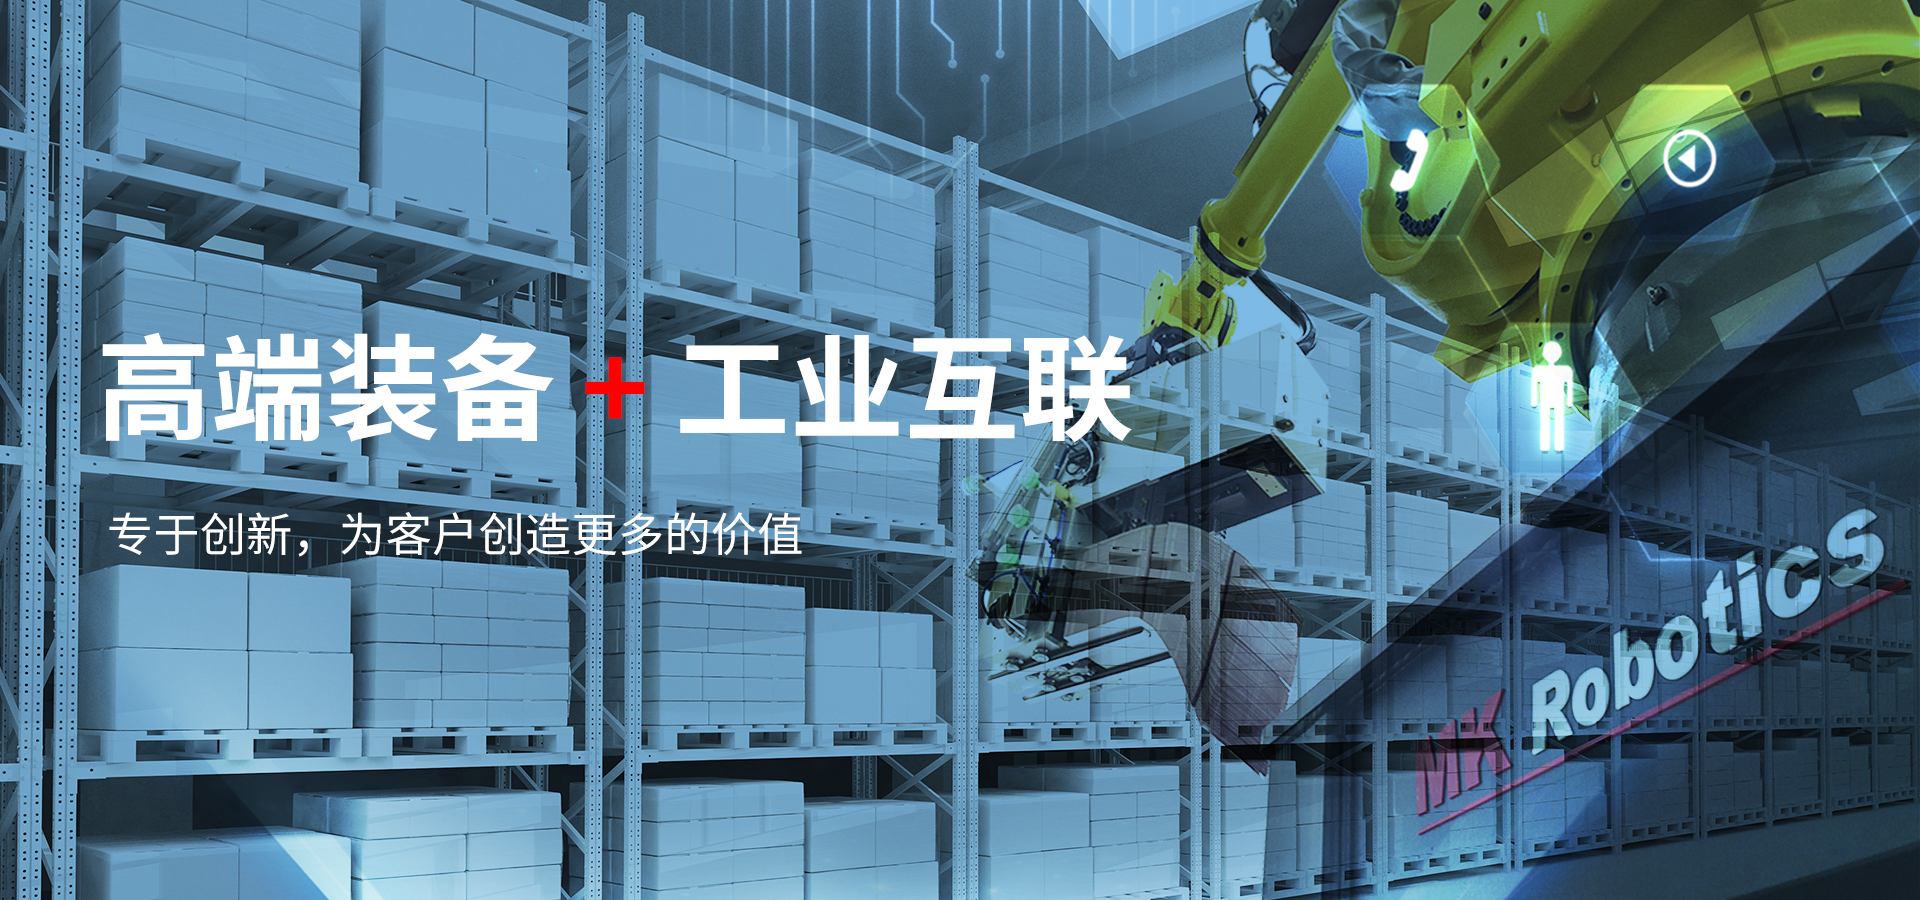 天津皇冠手机官方网站(中国)有限公司科技集团股份有限公司印刷装备制造